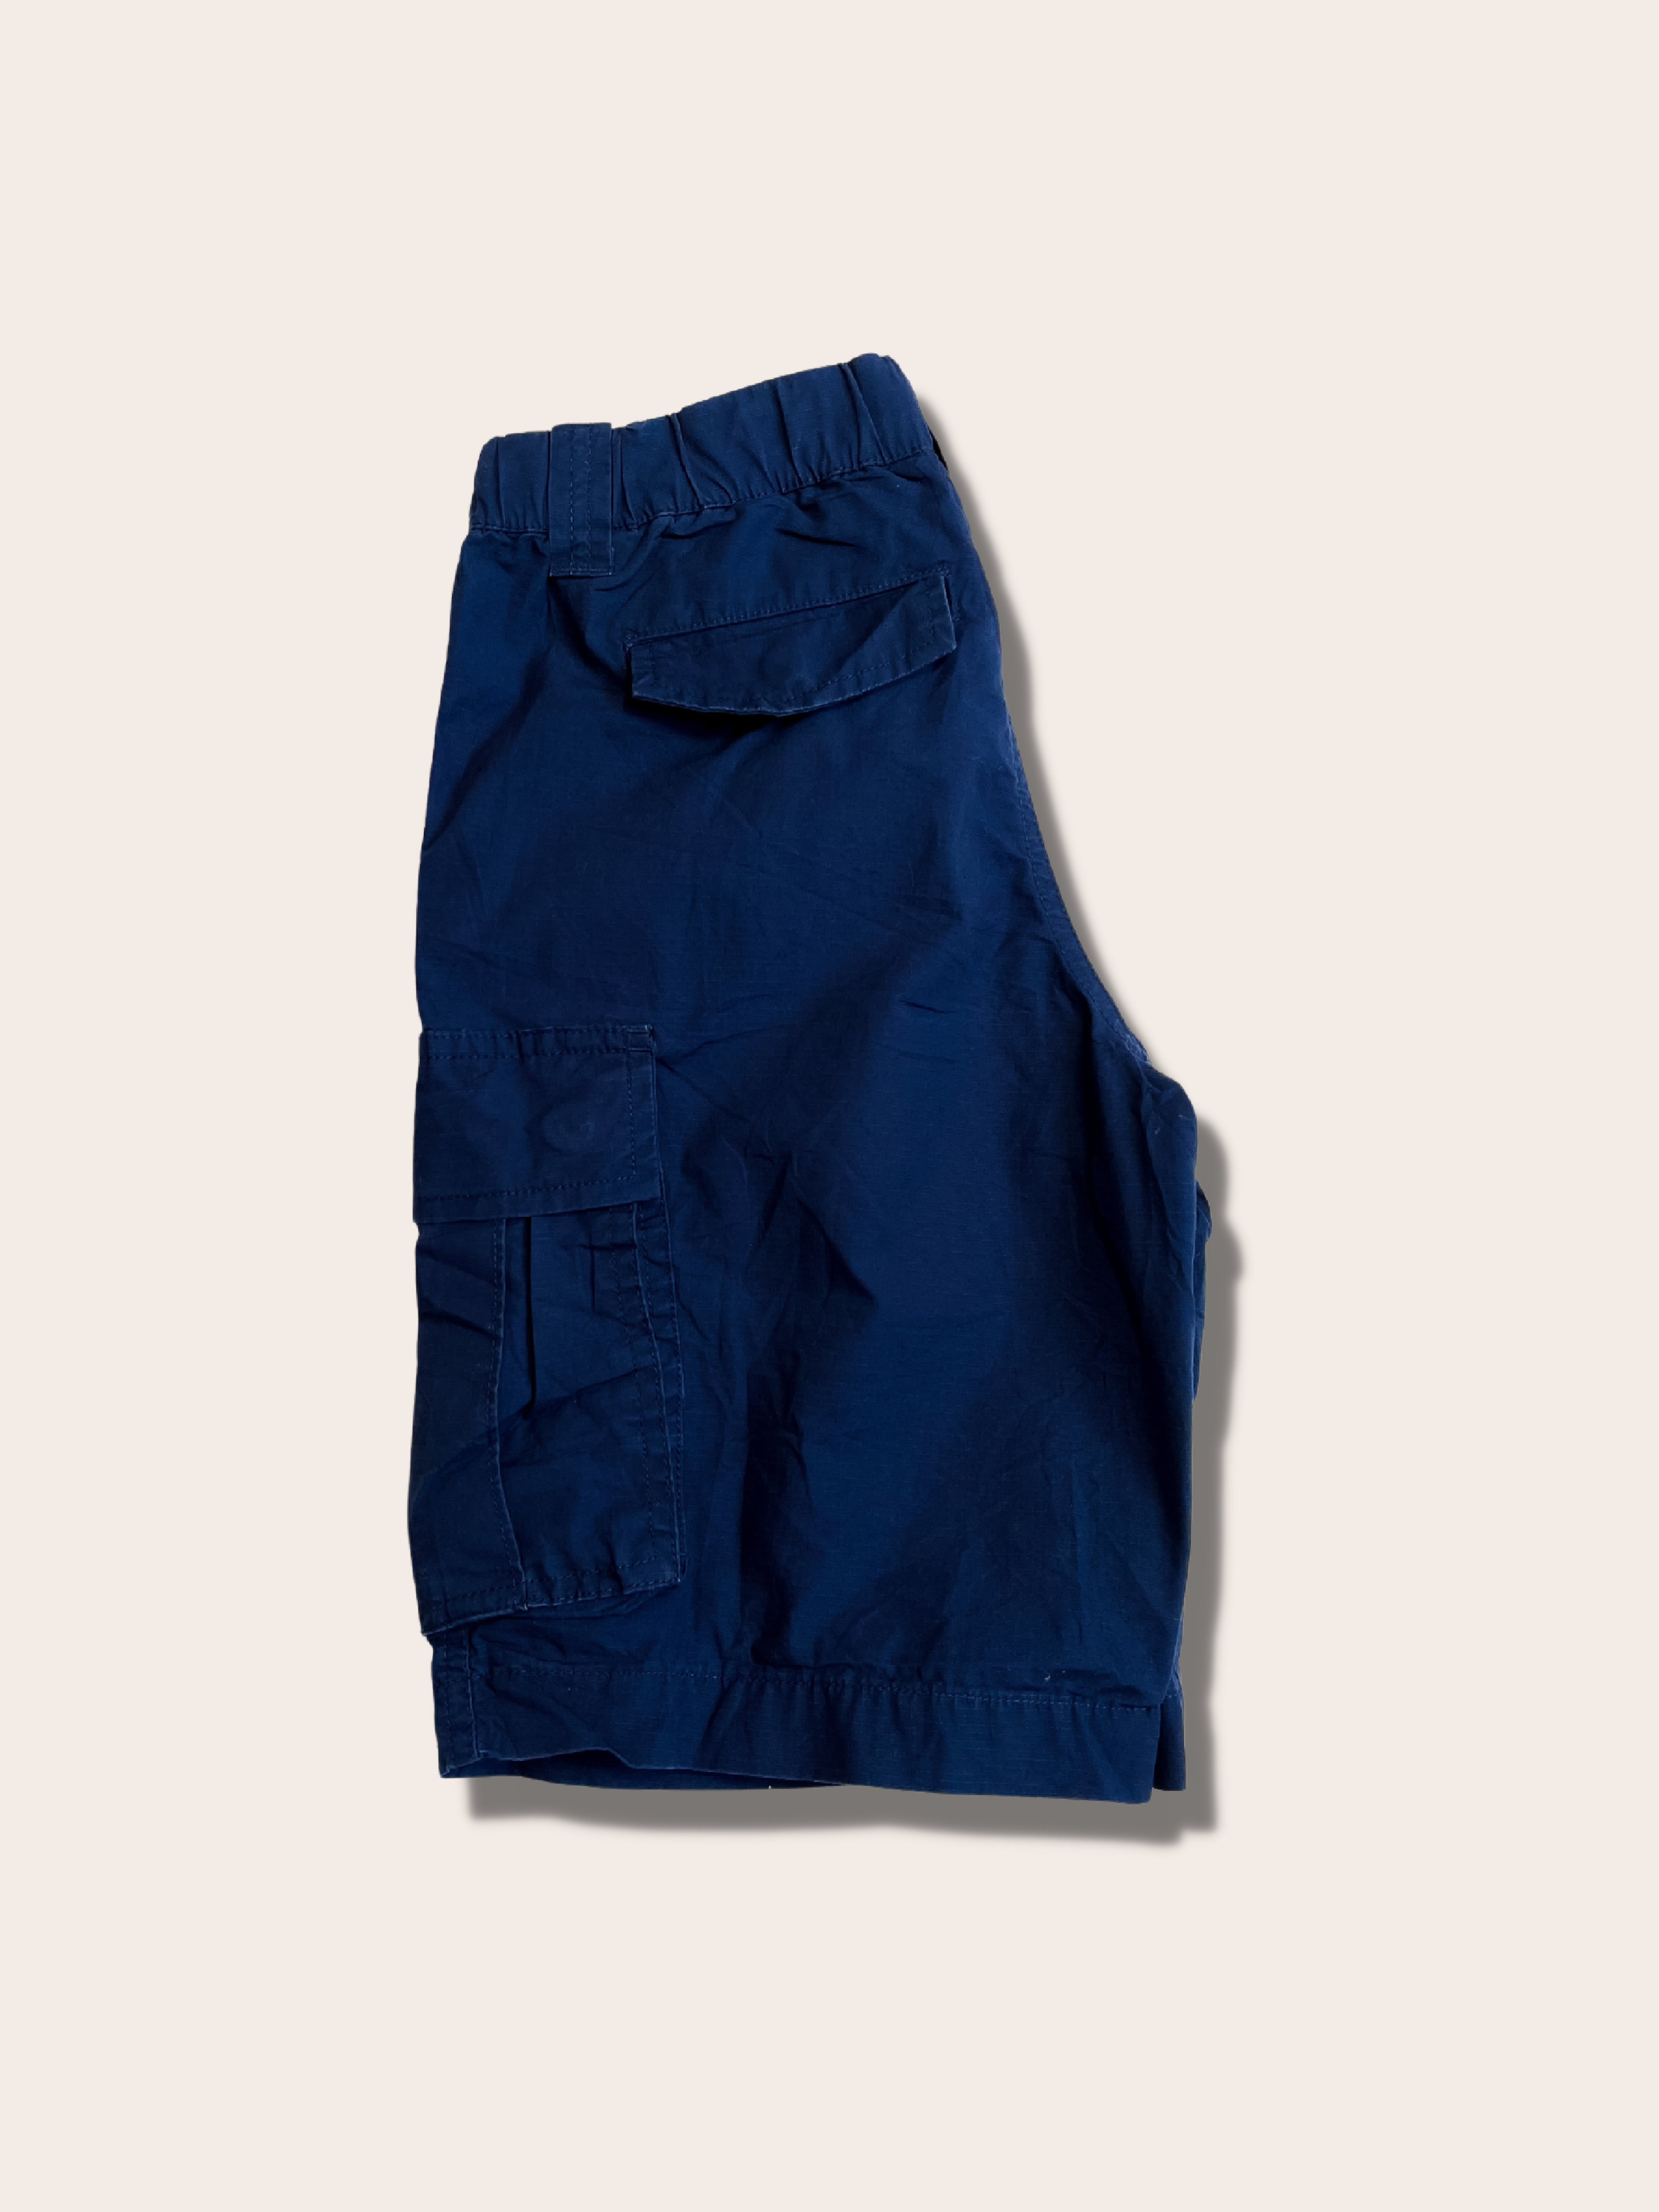 Ralph Lauren cotton cargo shorts (10y)